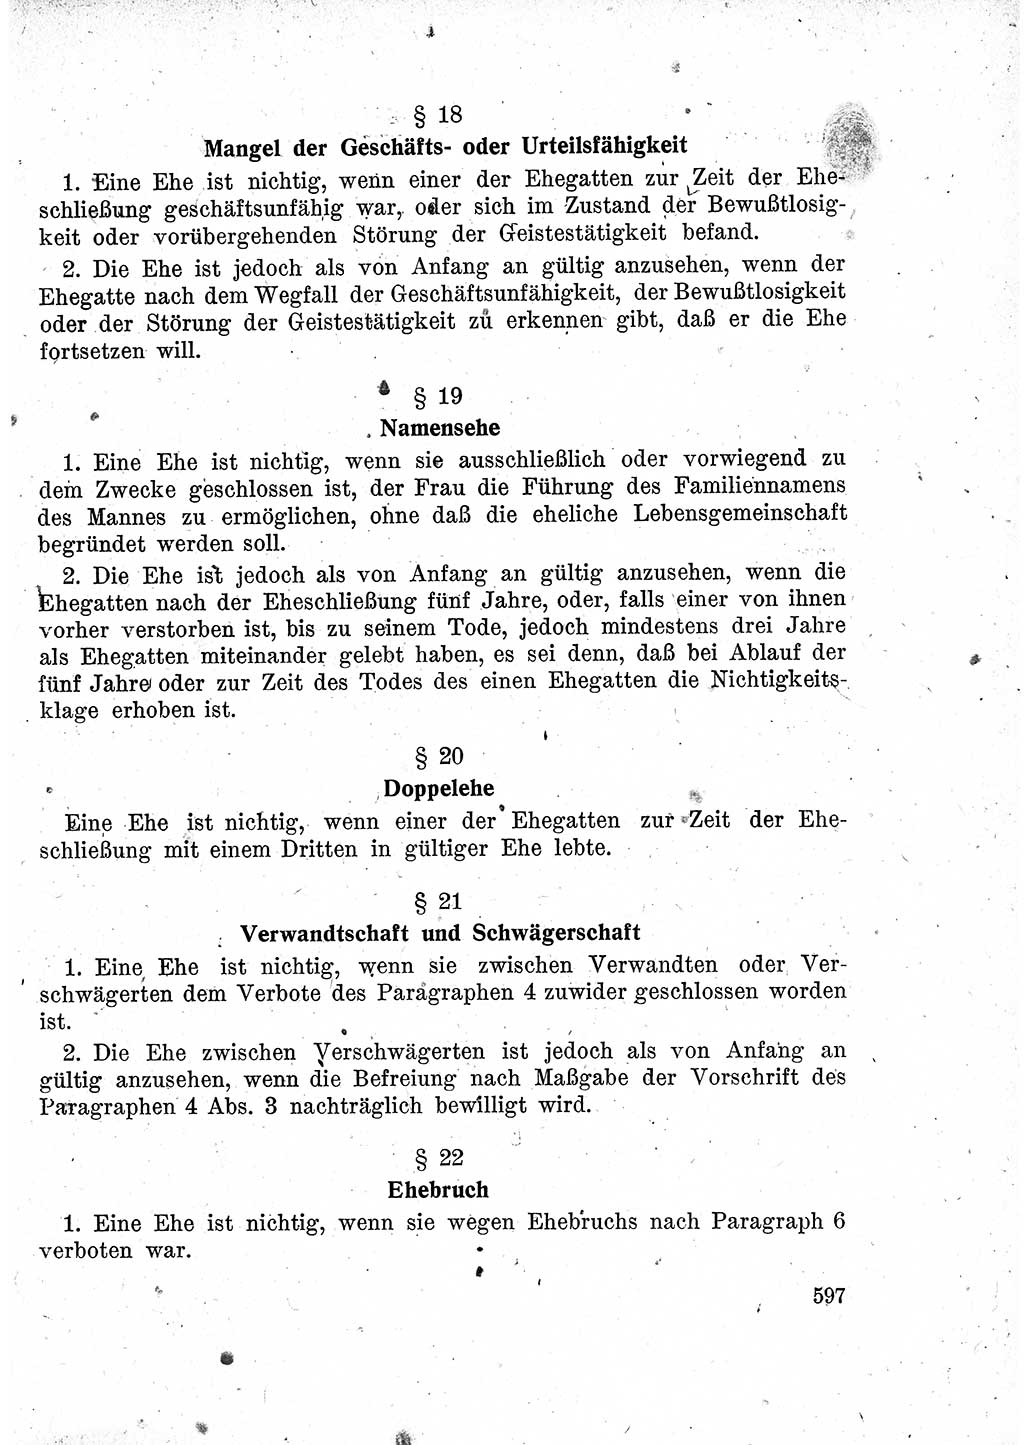 Das Recht der Besatzungsmacht (Deutschland), Proklamationen, Deklerationen, Verordnungen, Gesetze und Bekanntmachungen 1947, Seite 597 (R. Bes. Dtl. 1947, S. 597)